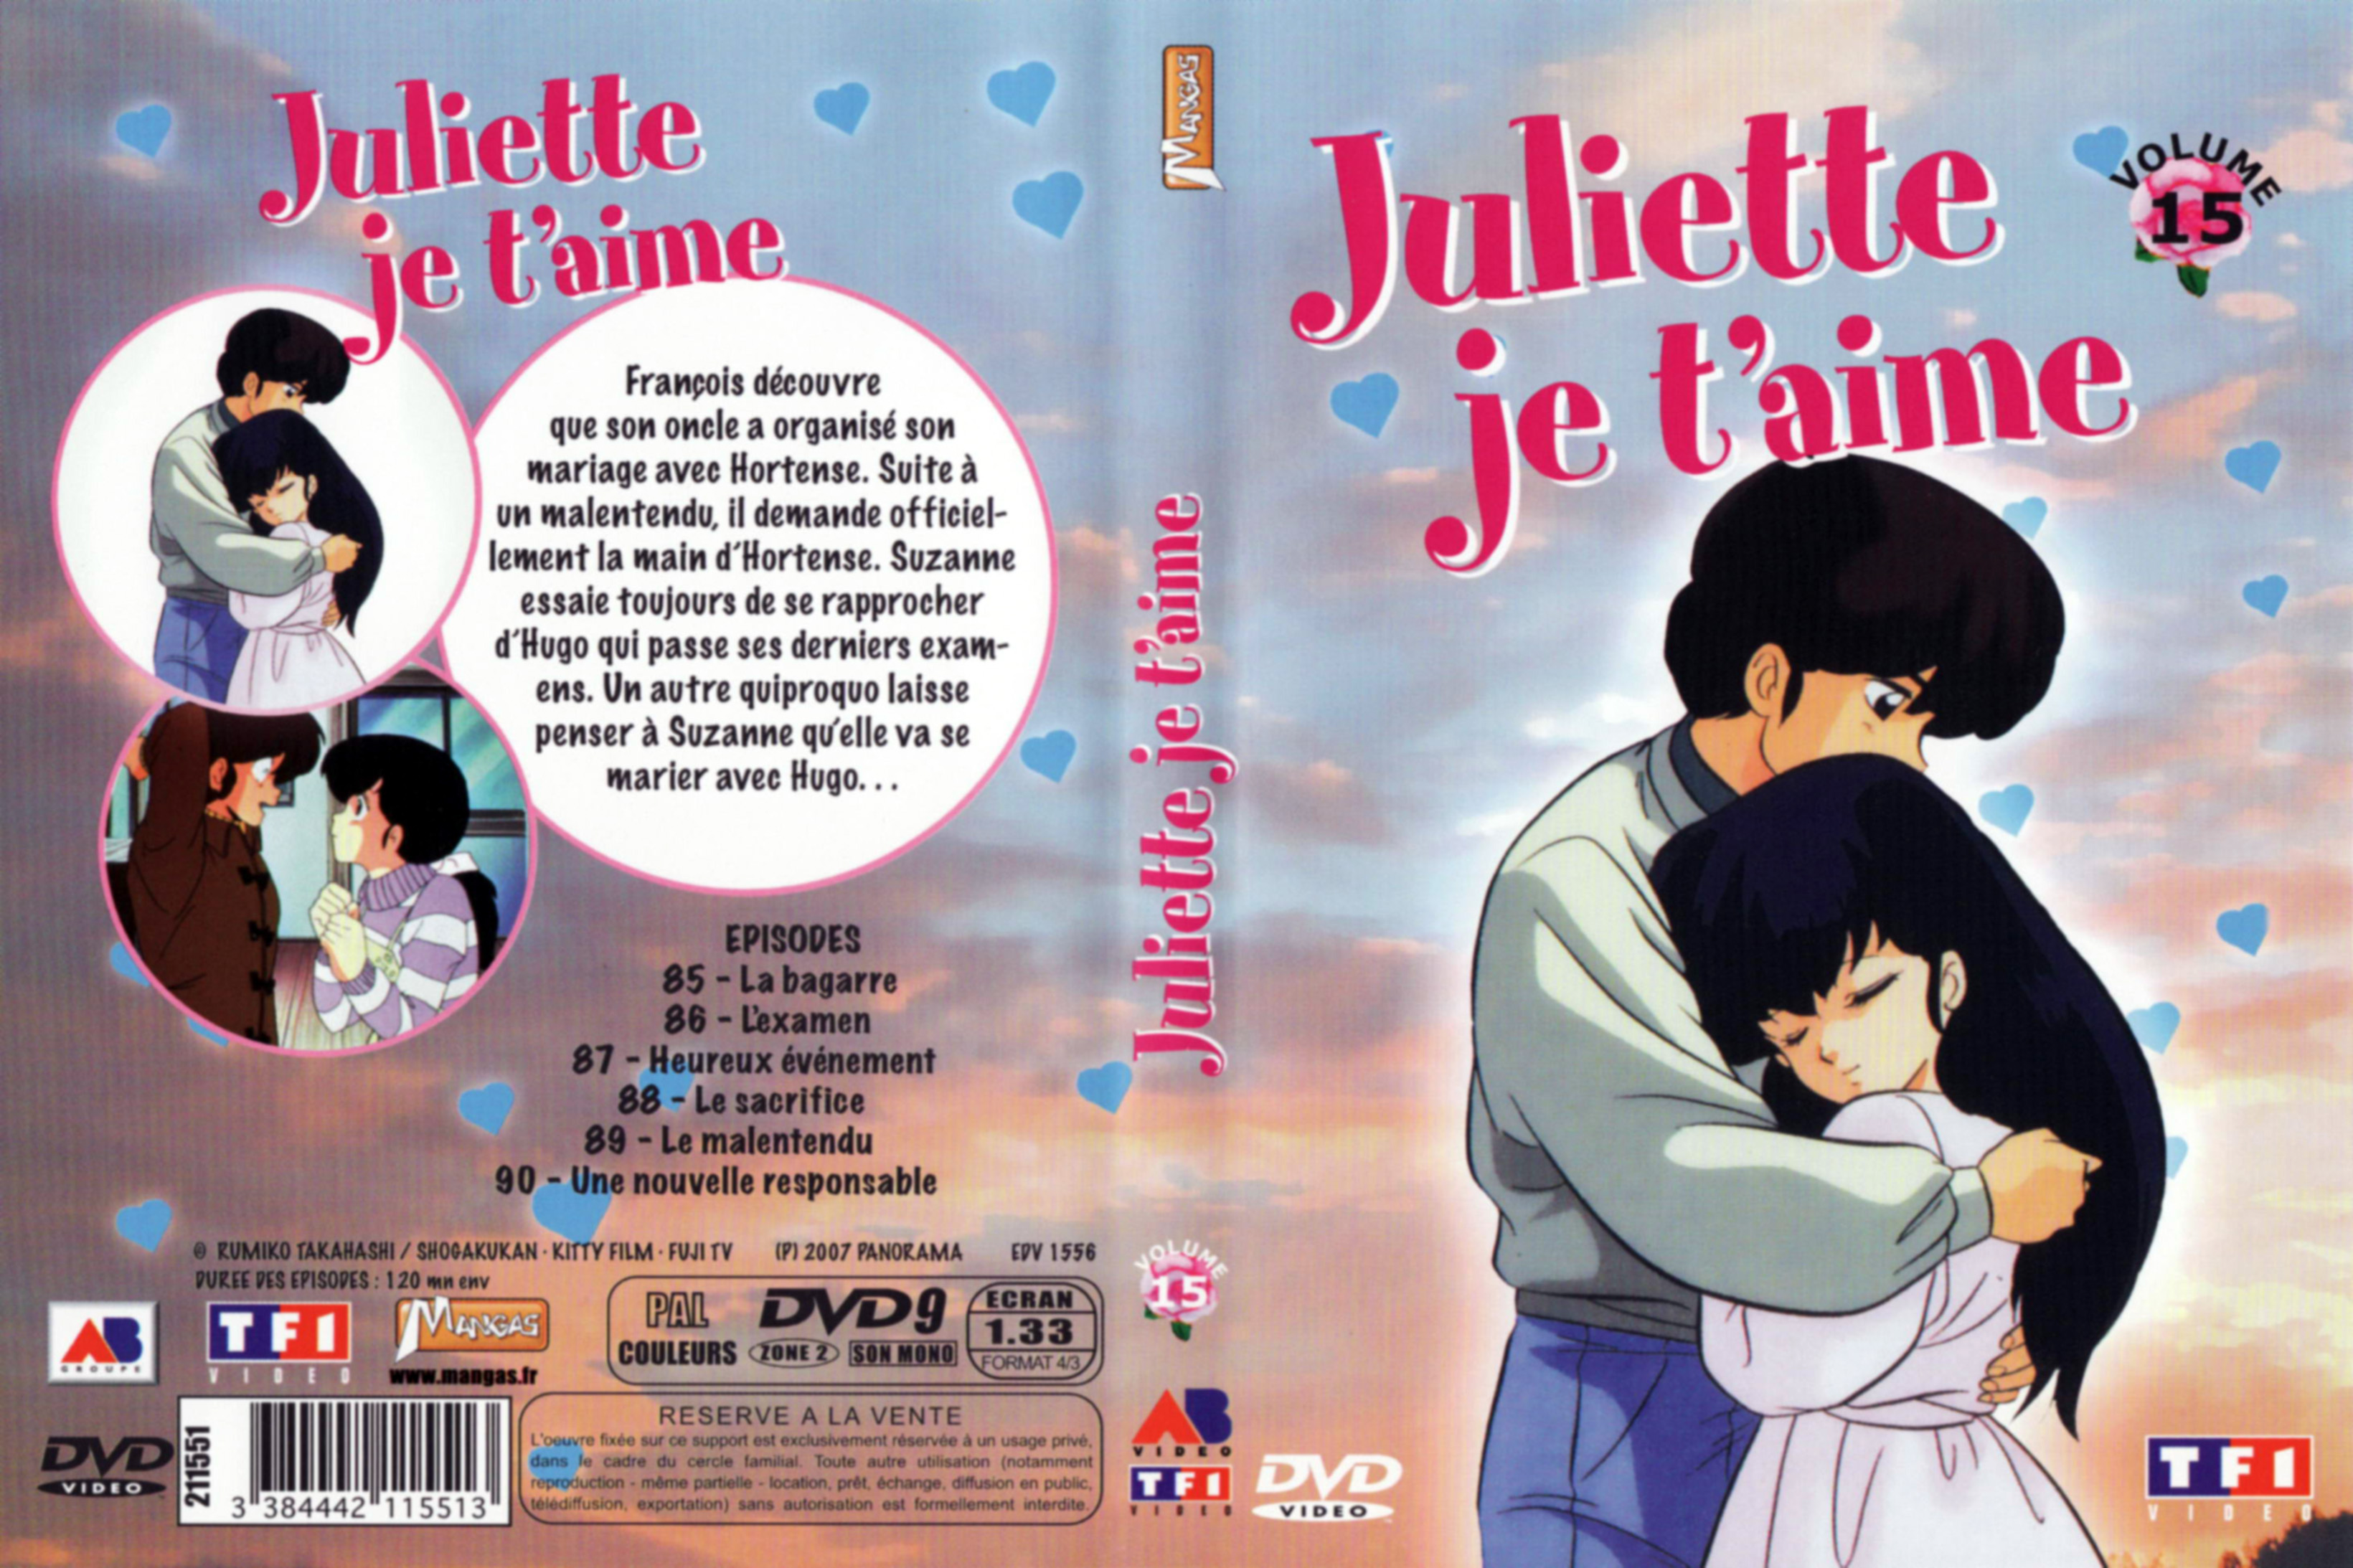 Jaquette DVD Juliette je t aime vol 15